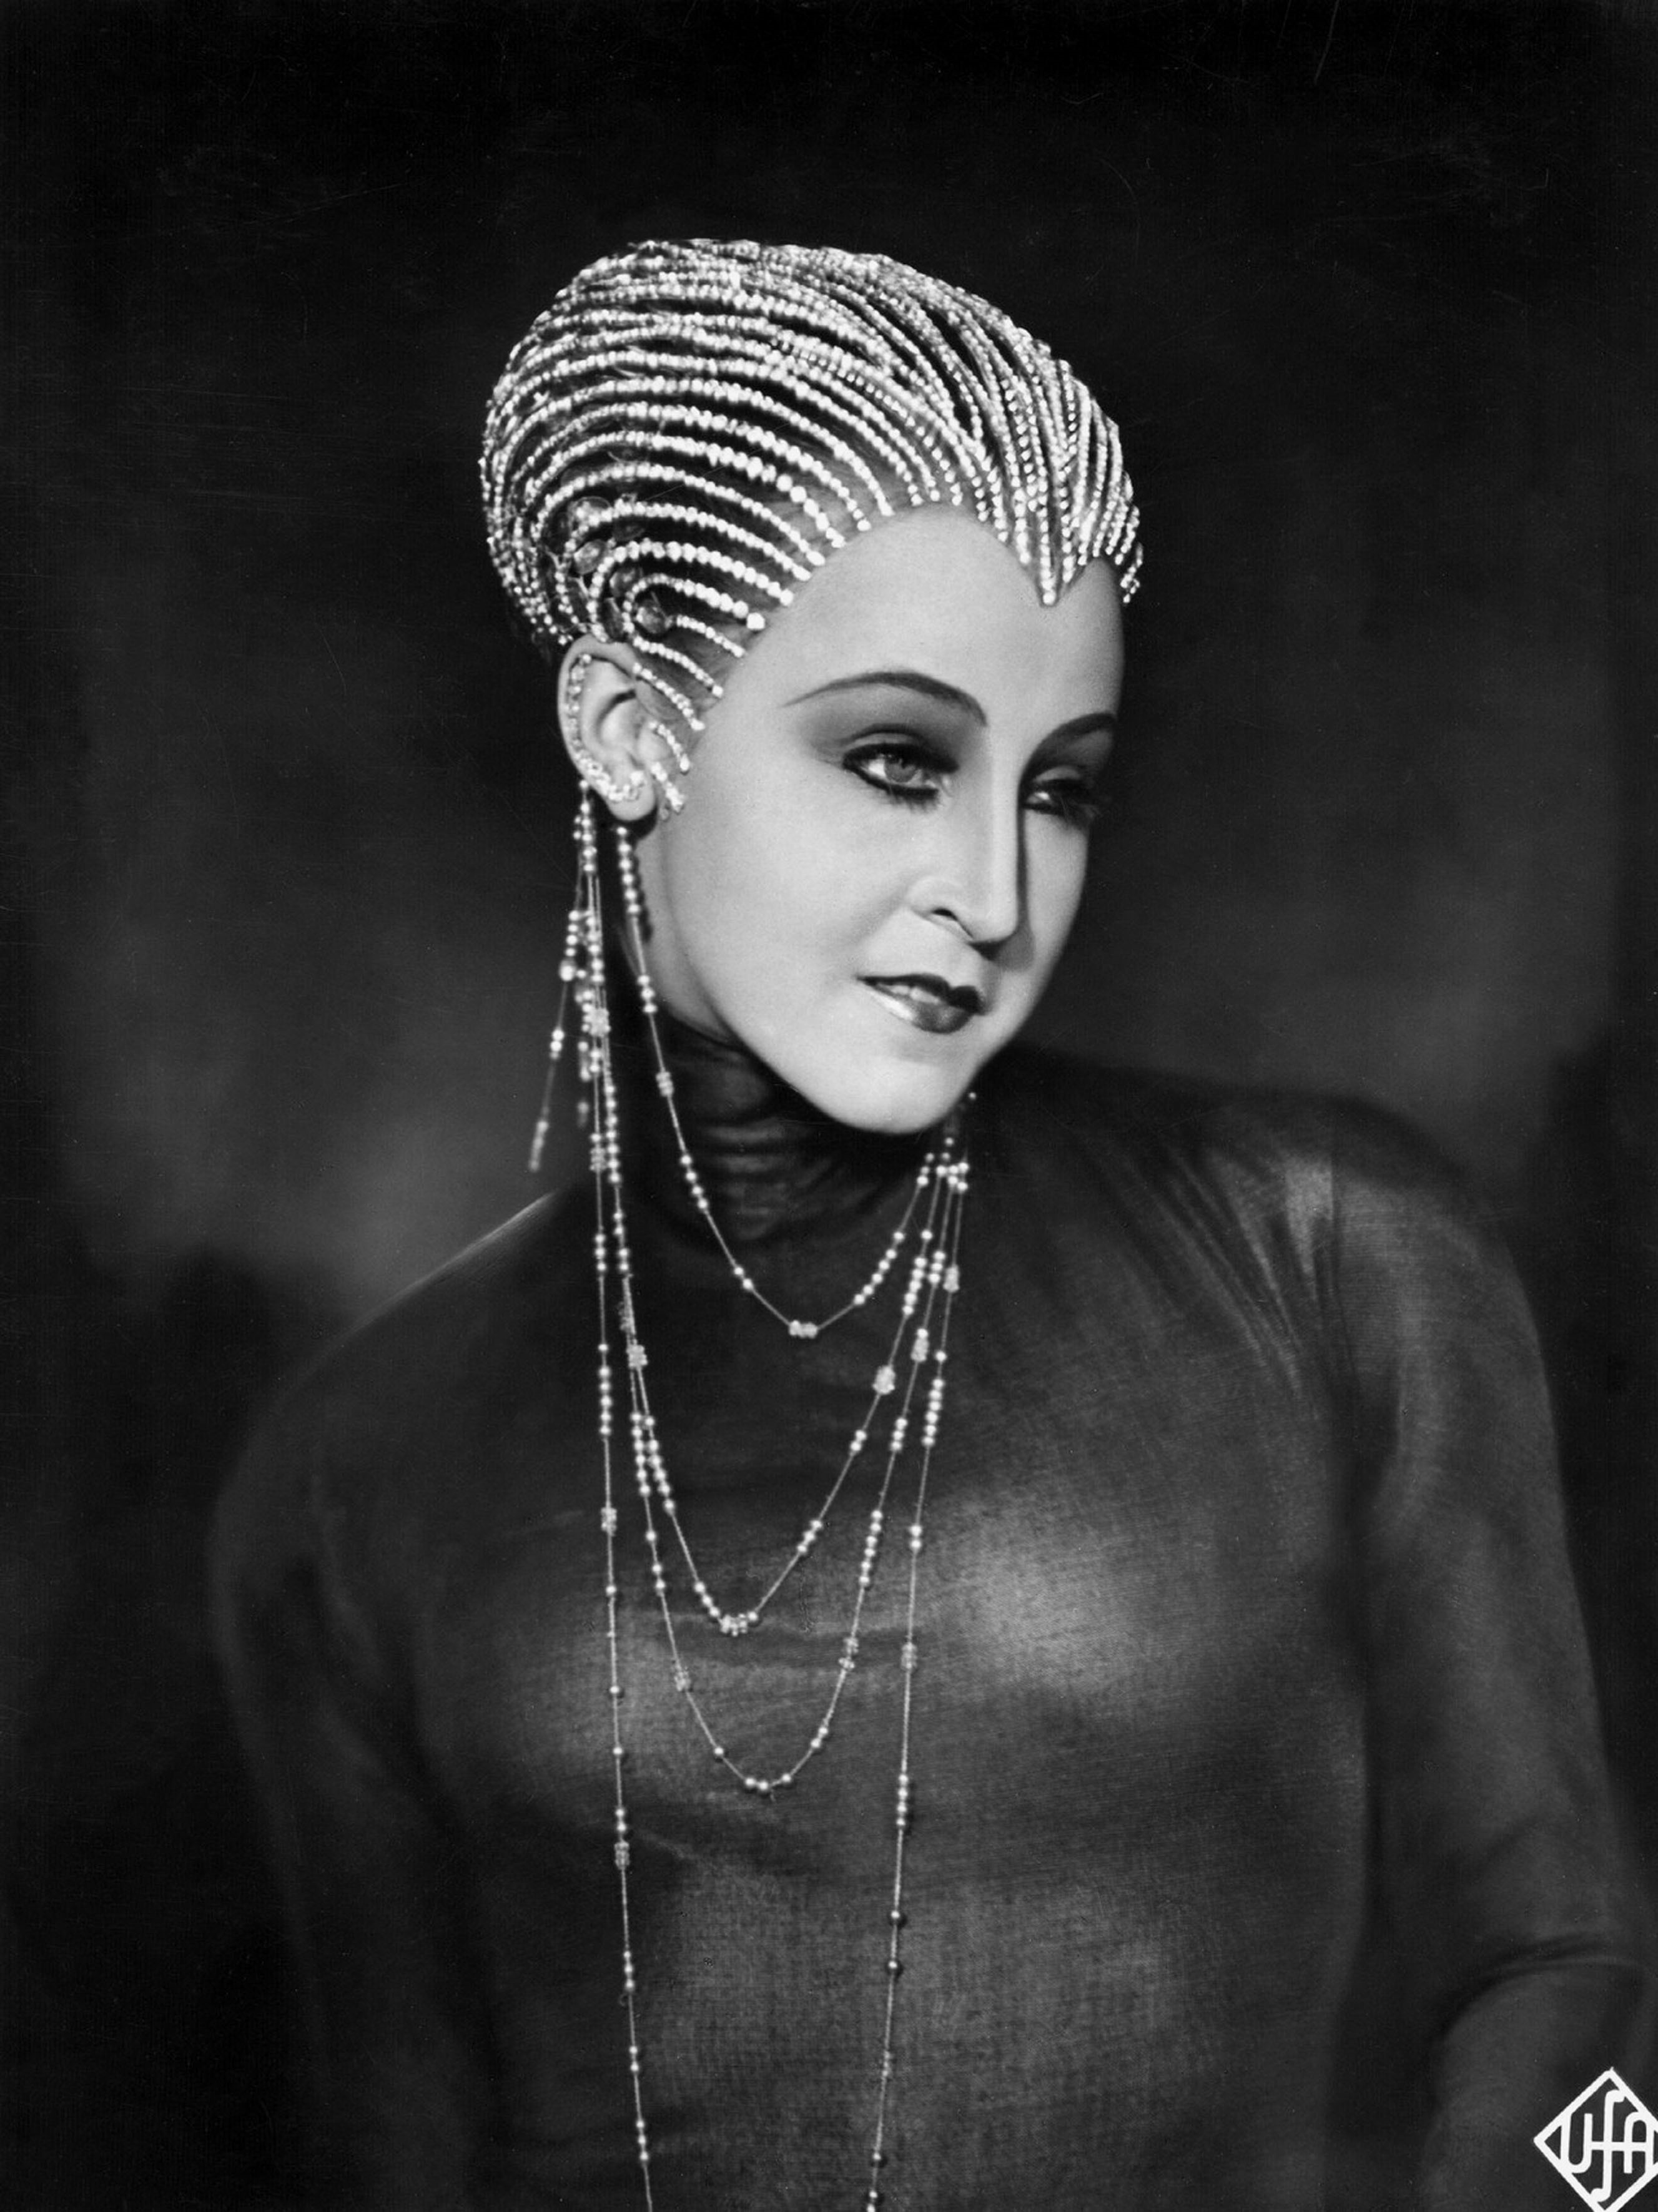 Brigitte Helm in Metropolis, 1927